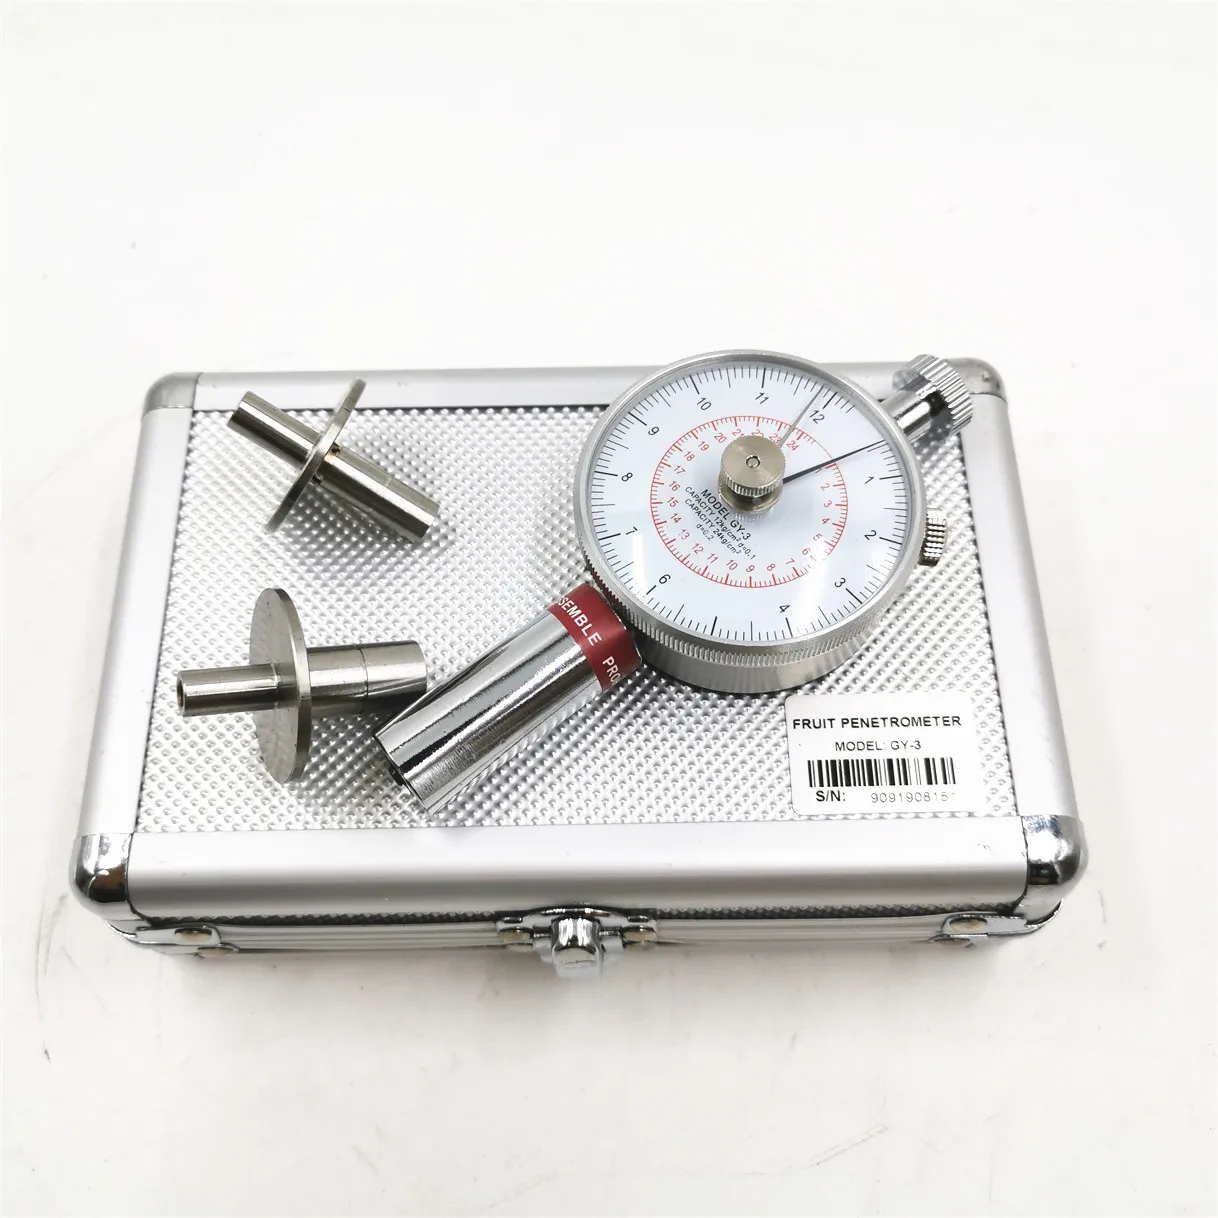 

GY-3 Fruit penetrometer Fruit Sclerometer Fruit Hardness Tester Fruit Durometer 0.5-12kg/cm 2